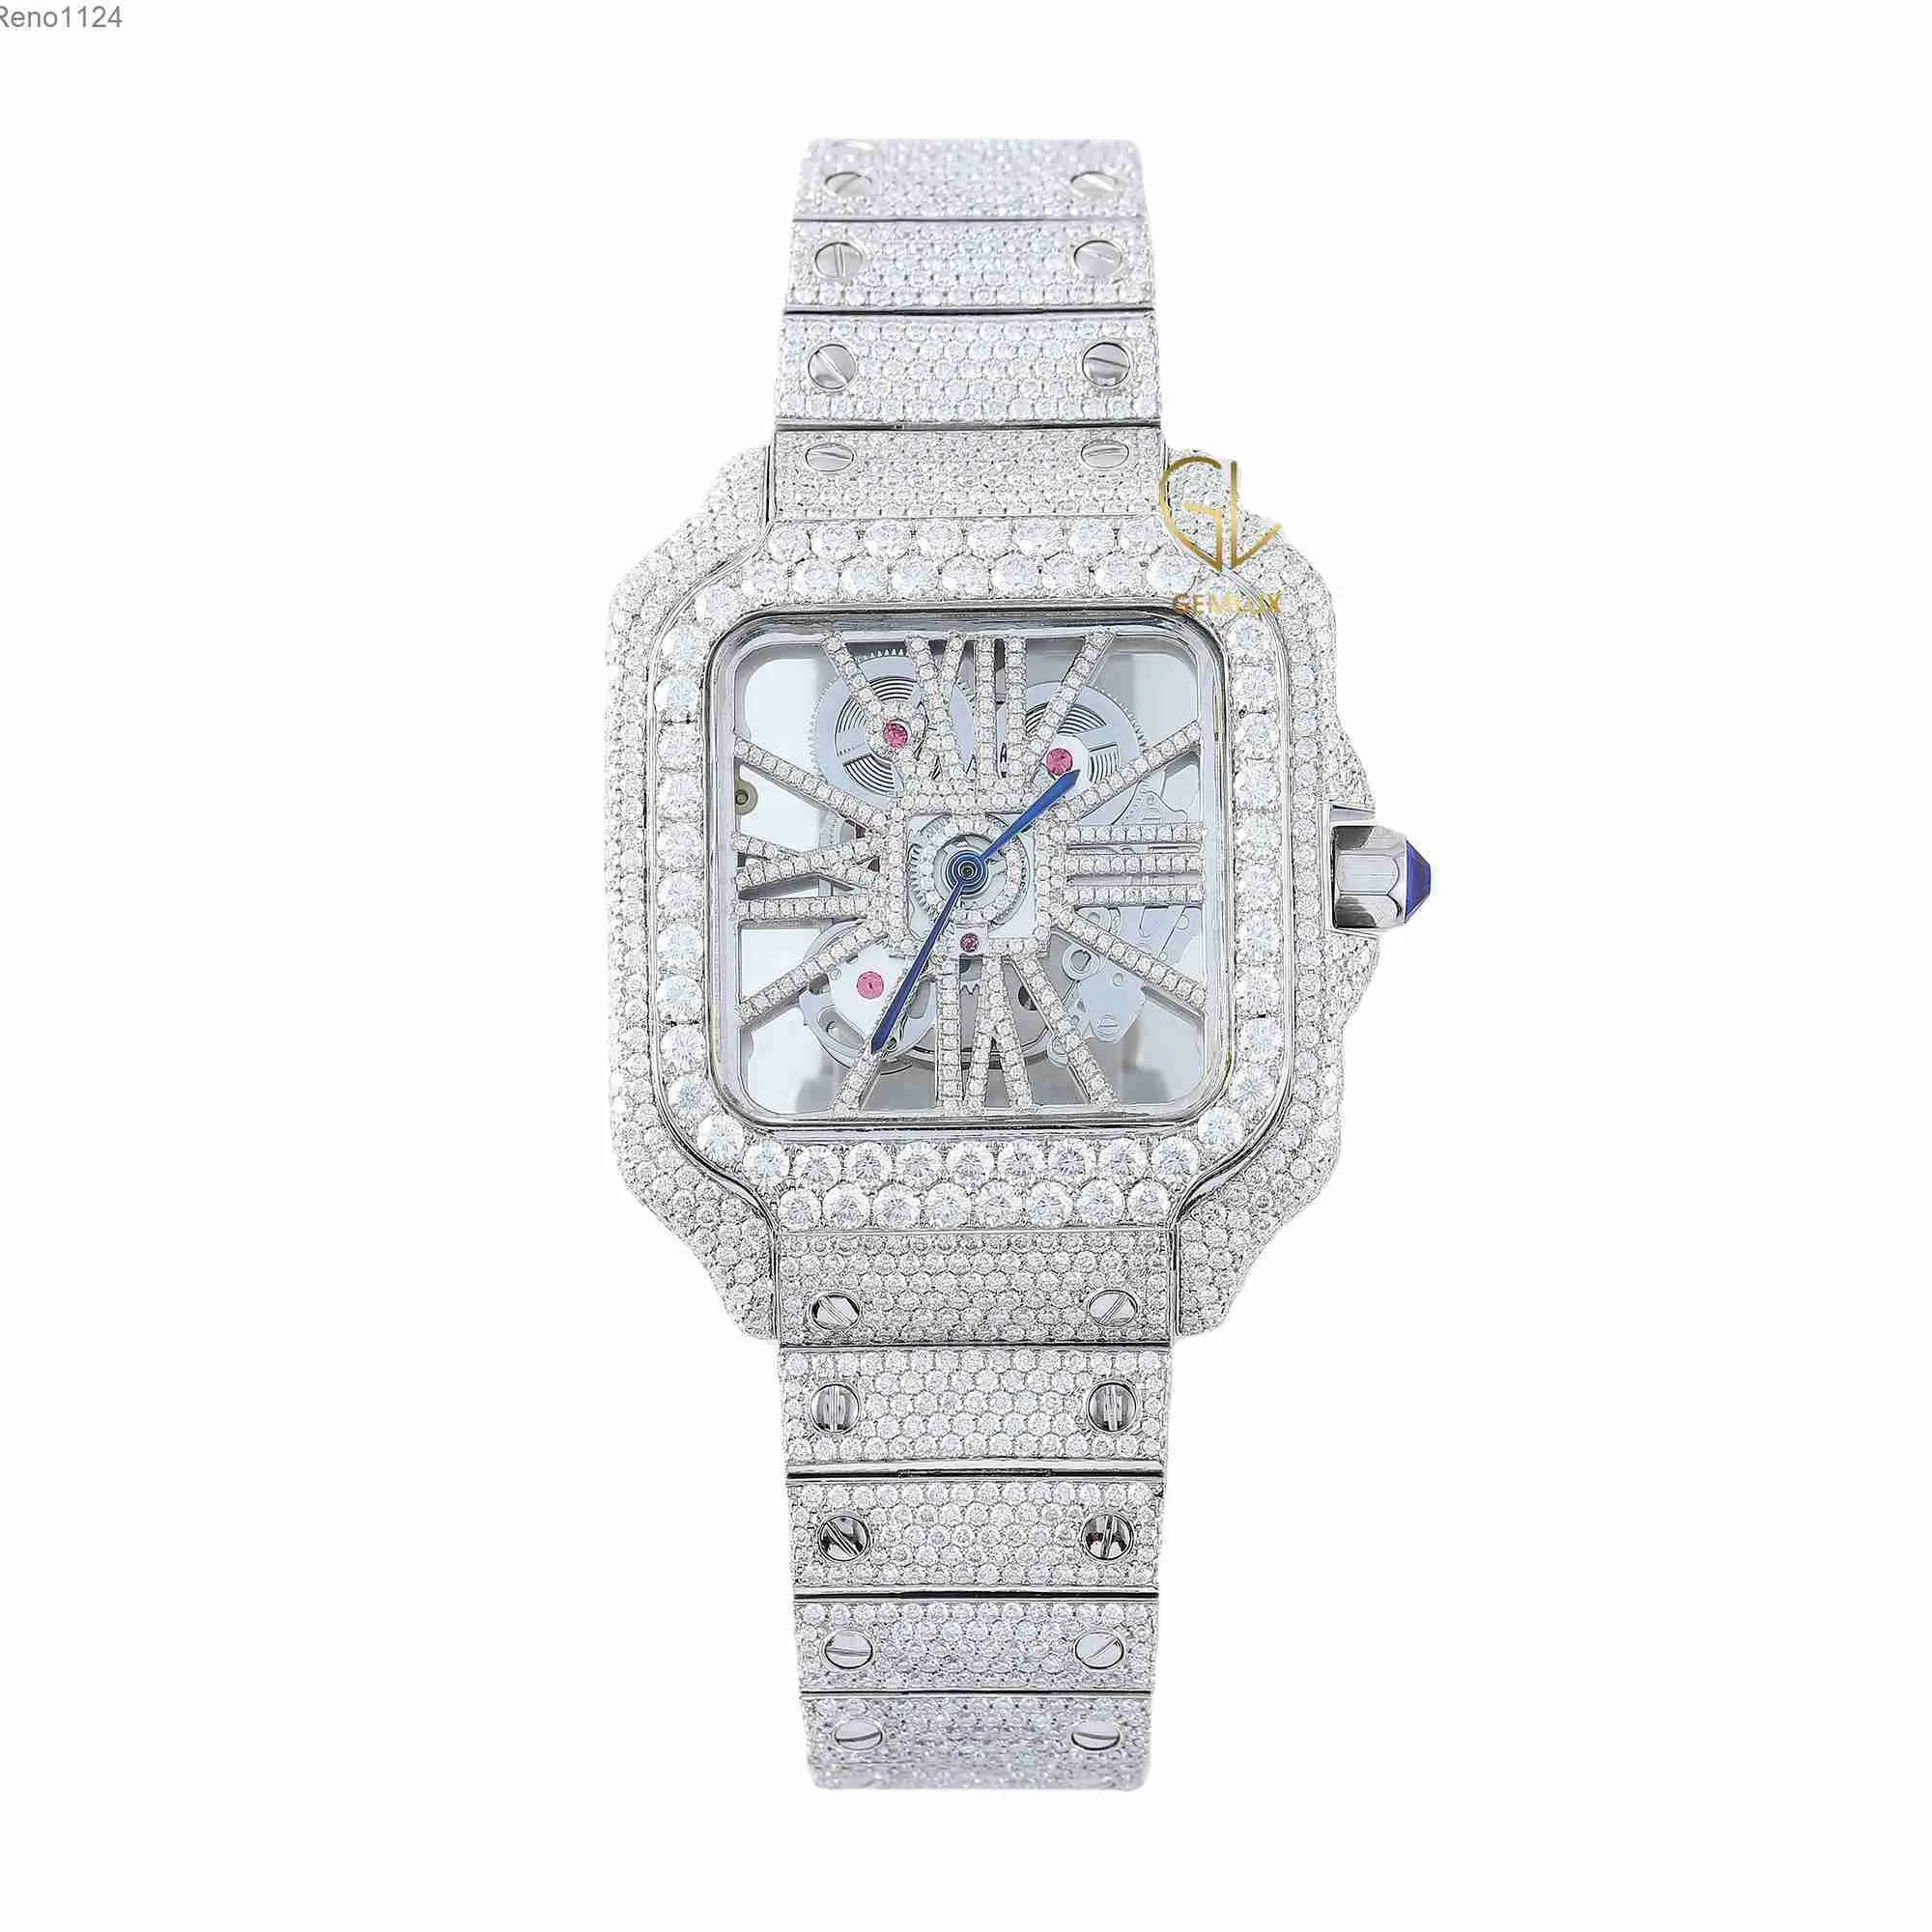 D vvs okrągły genialny krój kryształ moissanite Diamond Nowa modna modna biżuteria Mężczyźni urocze w pełni mrożone zegarek na nadgarstek